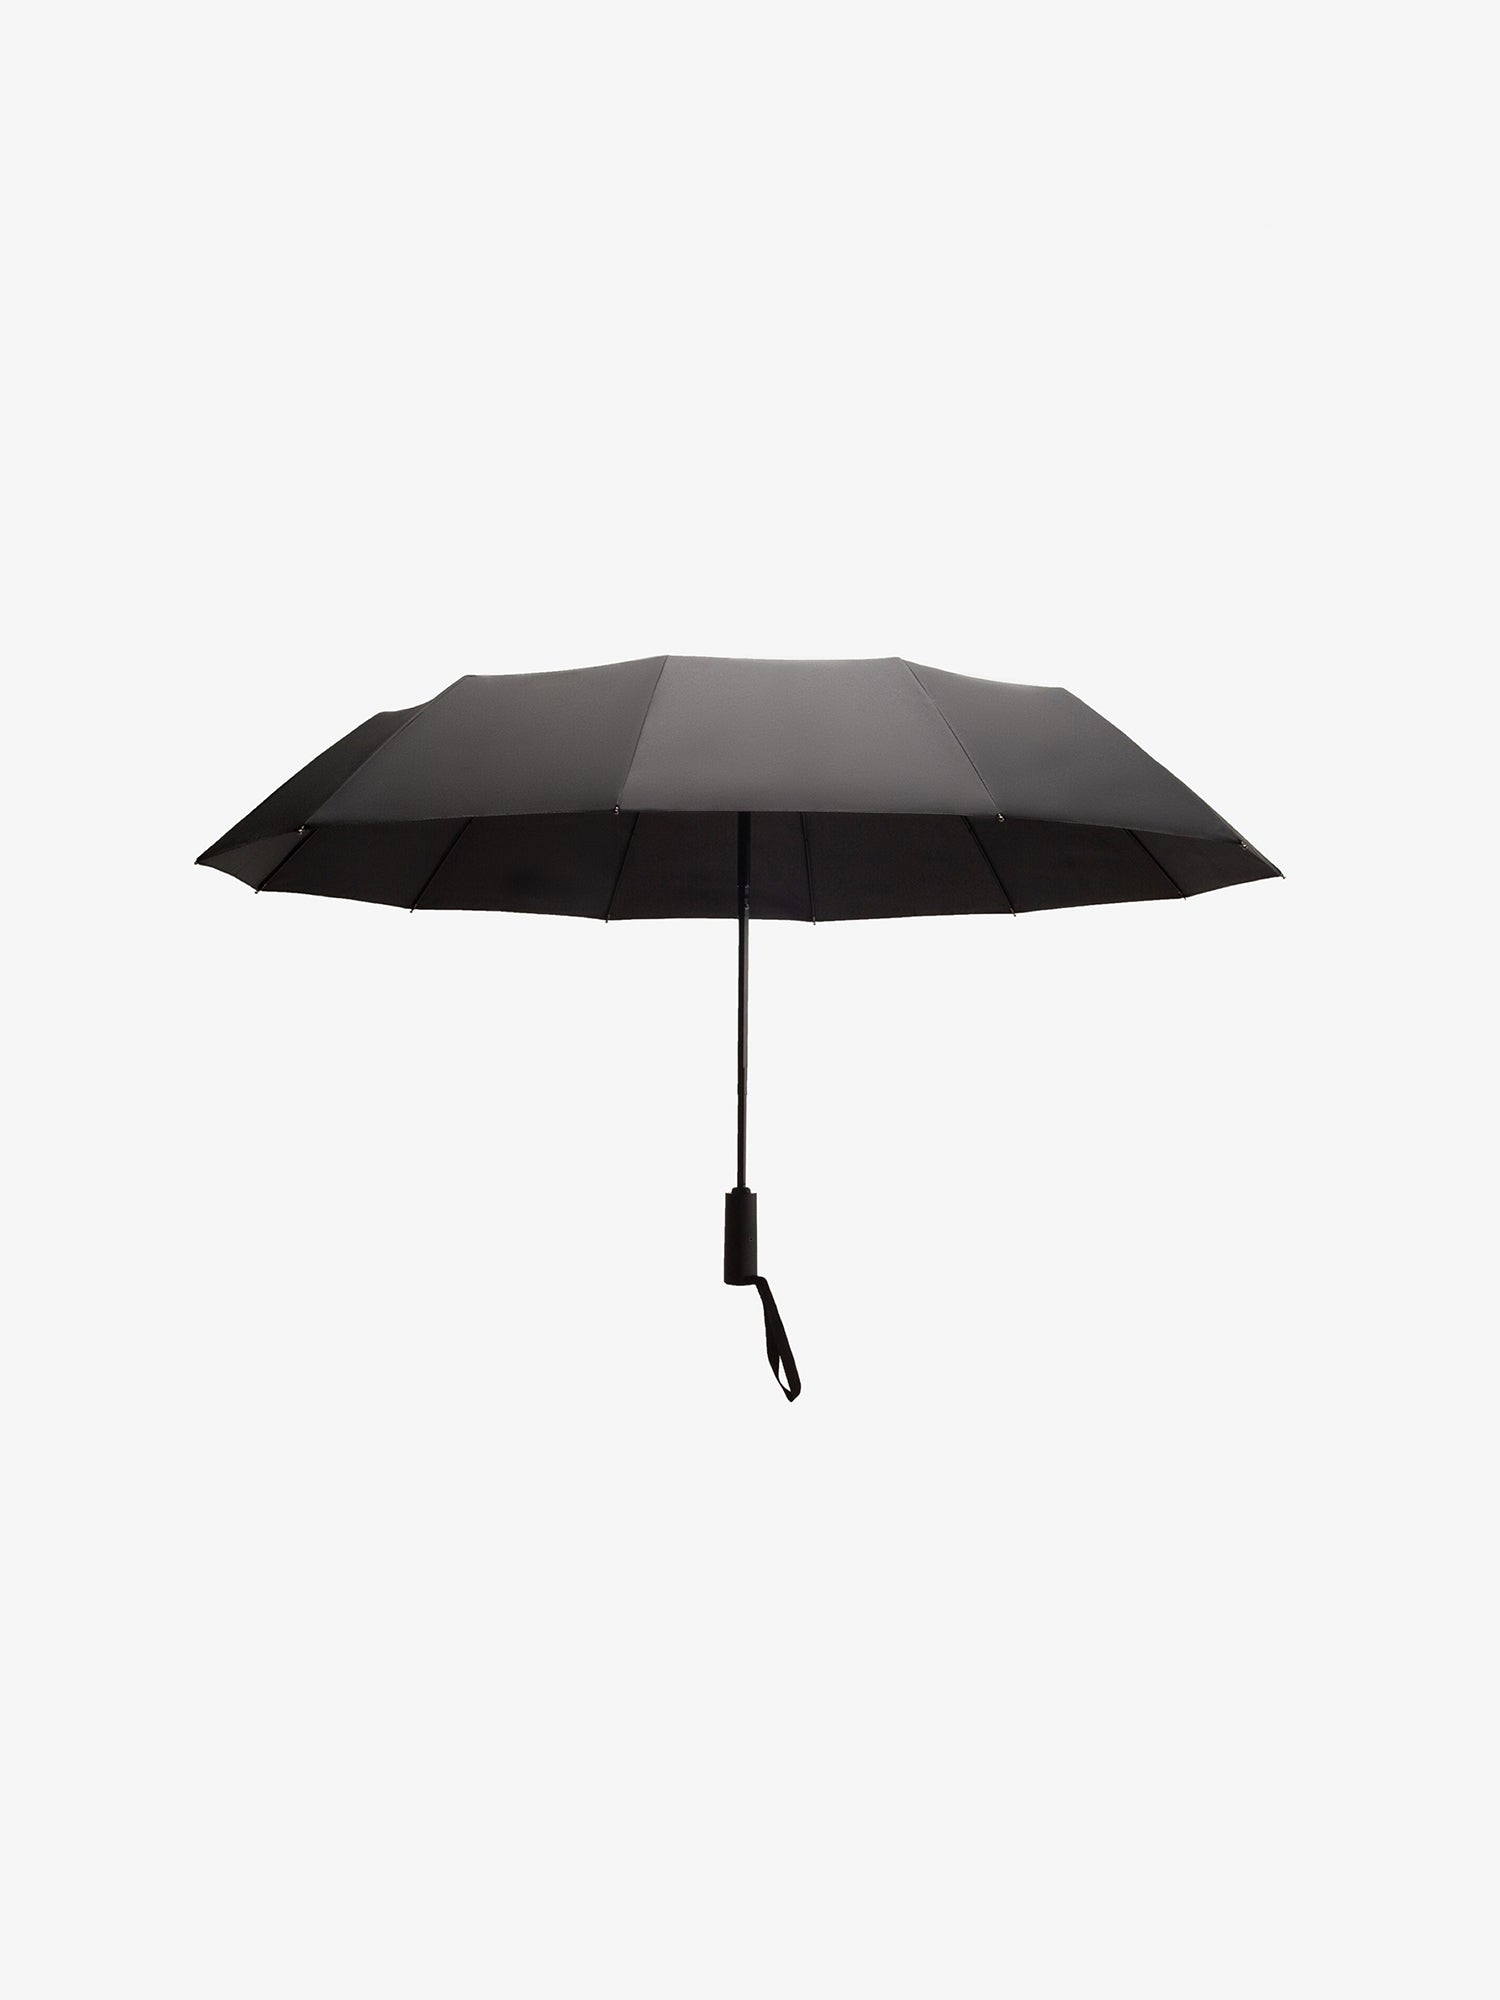 most durable compact umbrella